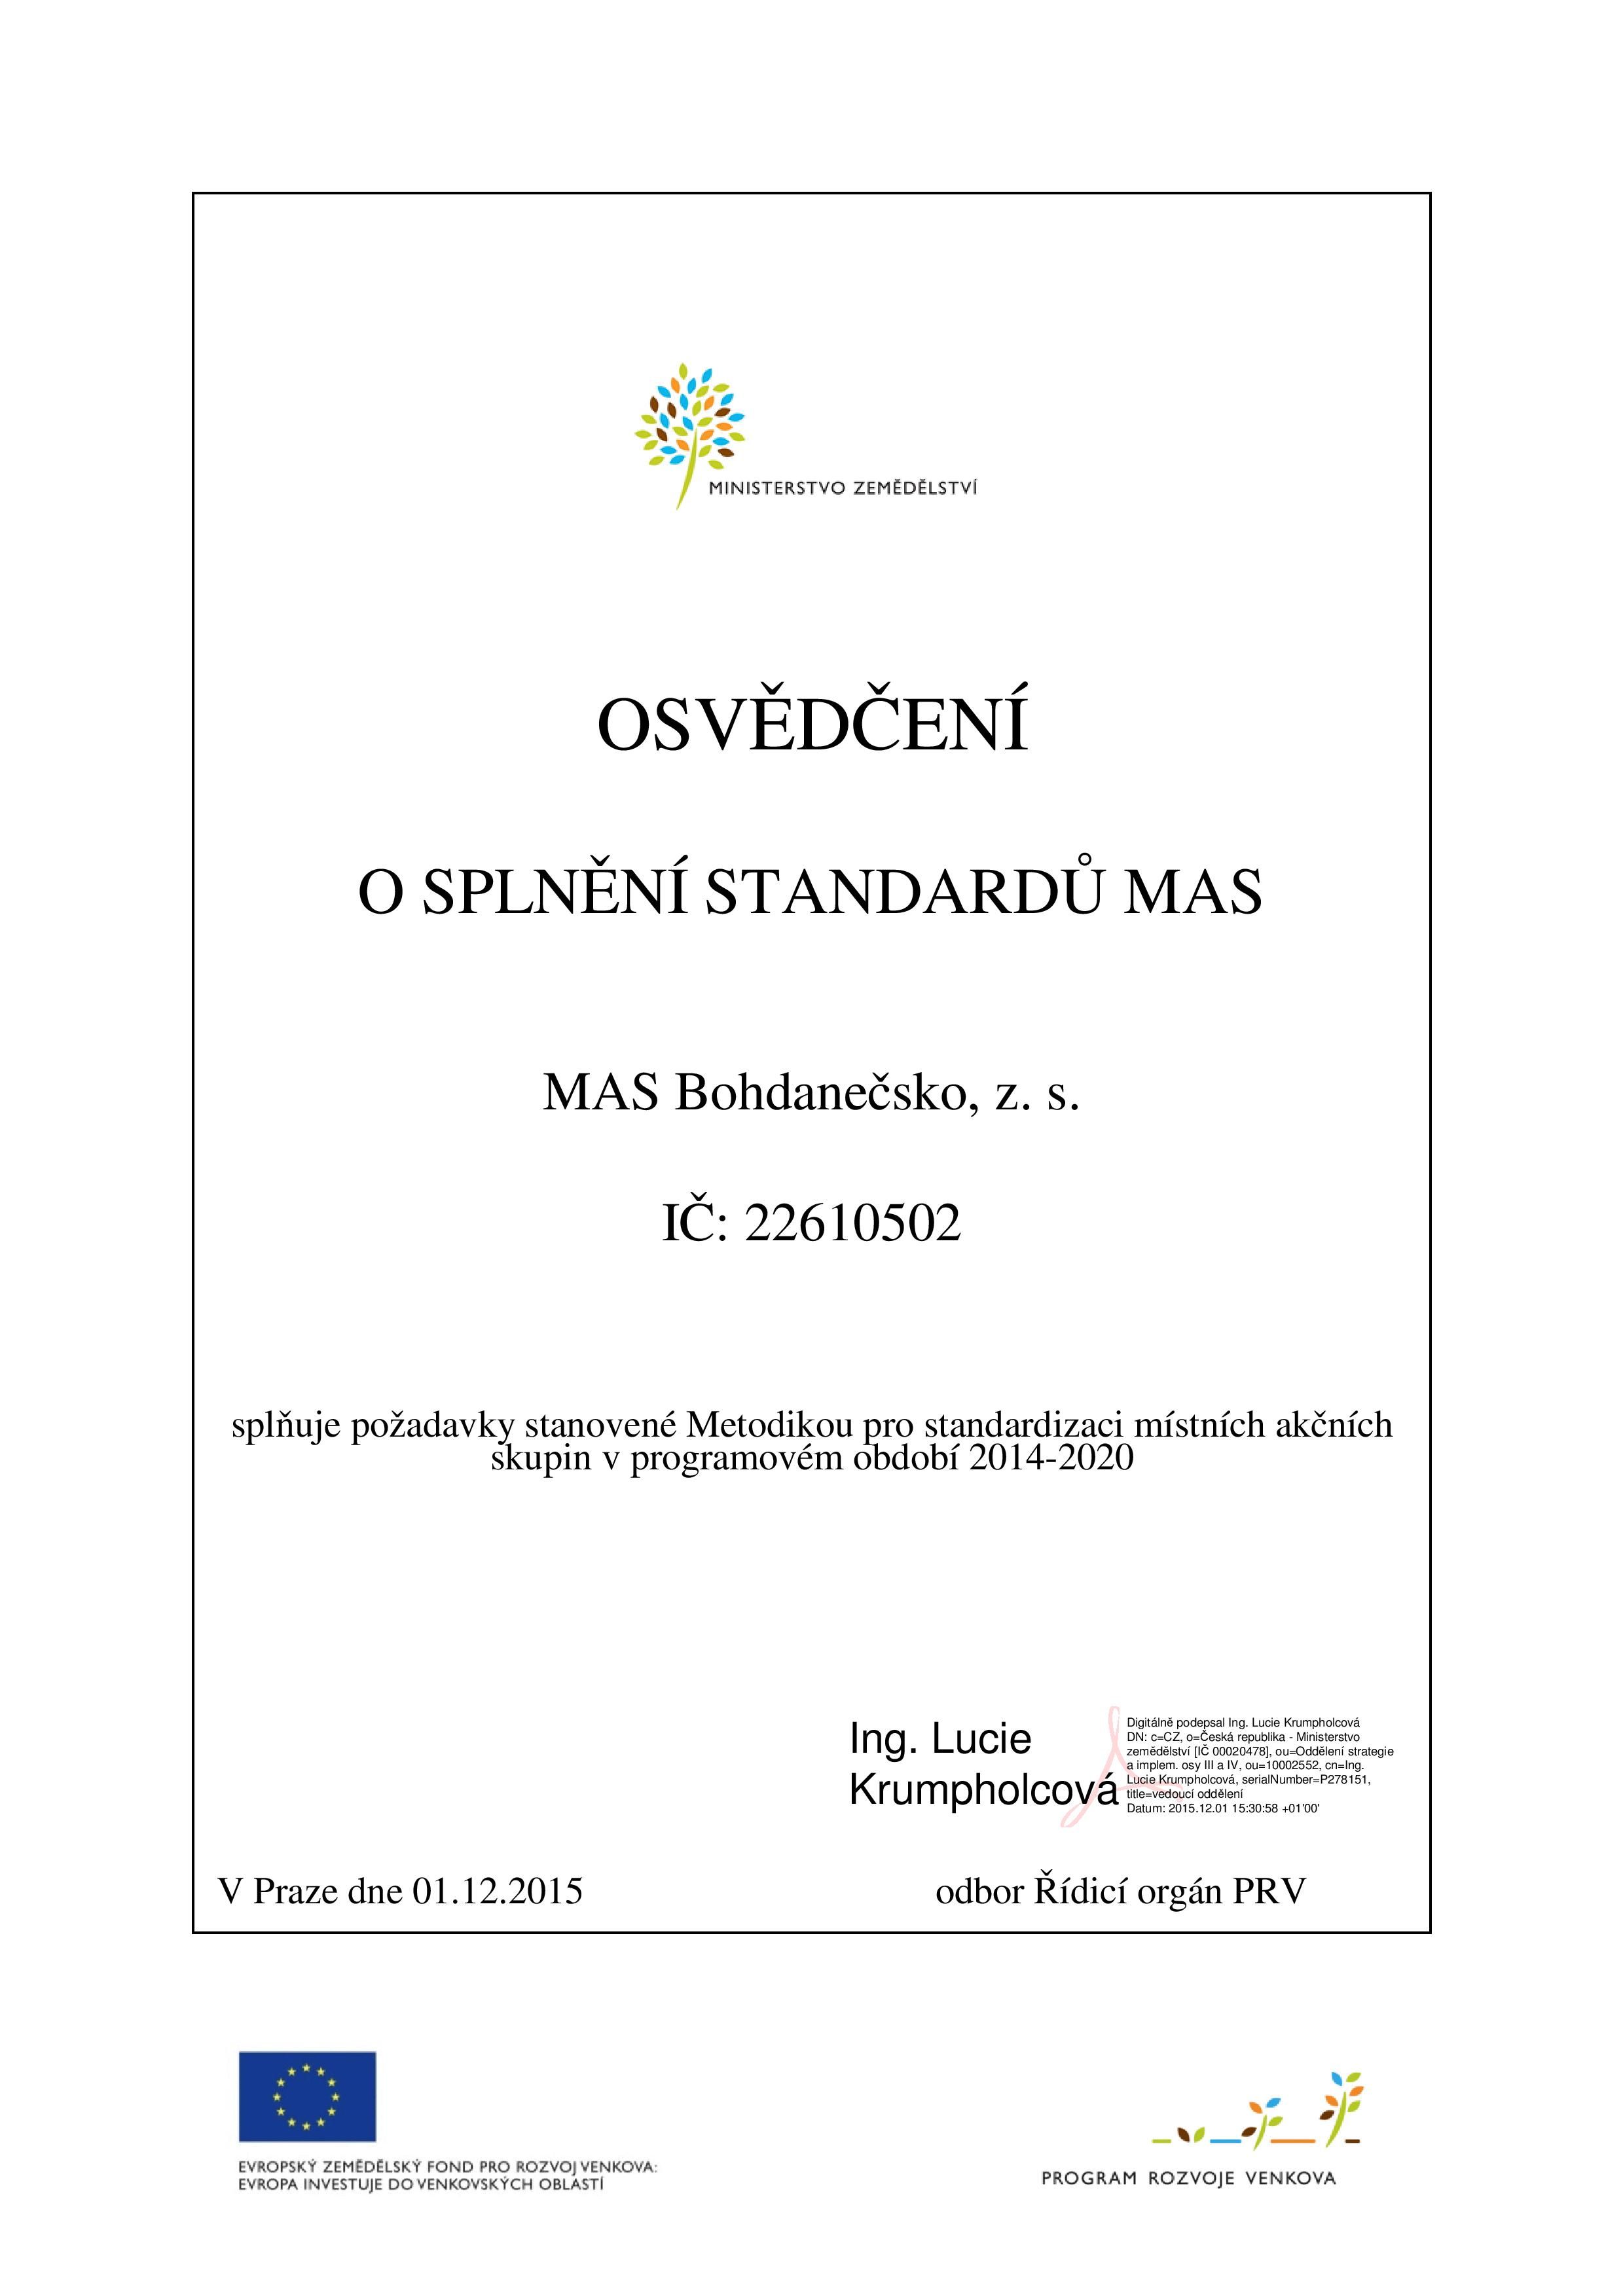 Osvědčení o standardizaci_MAS Bohdanečsko.jpg